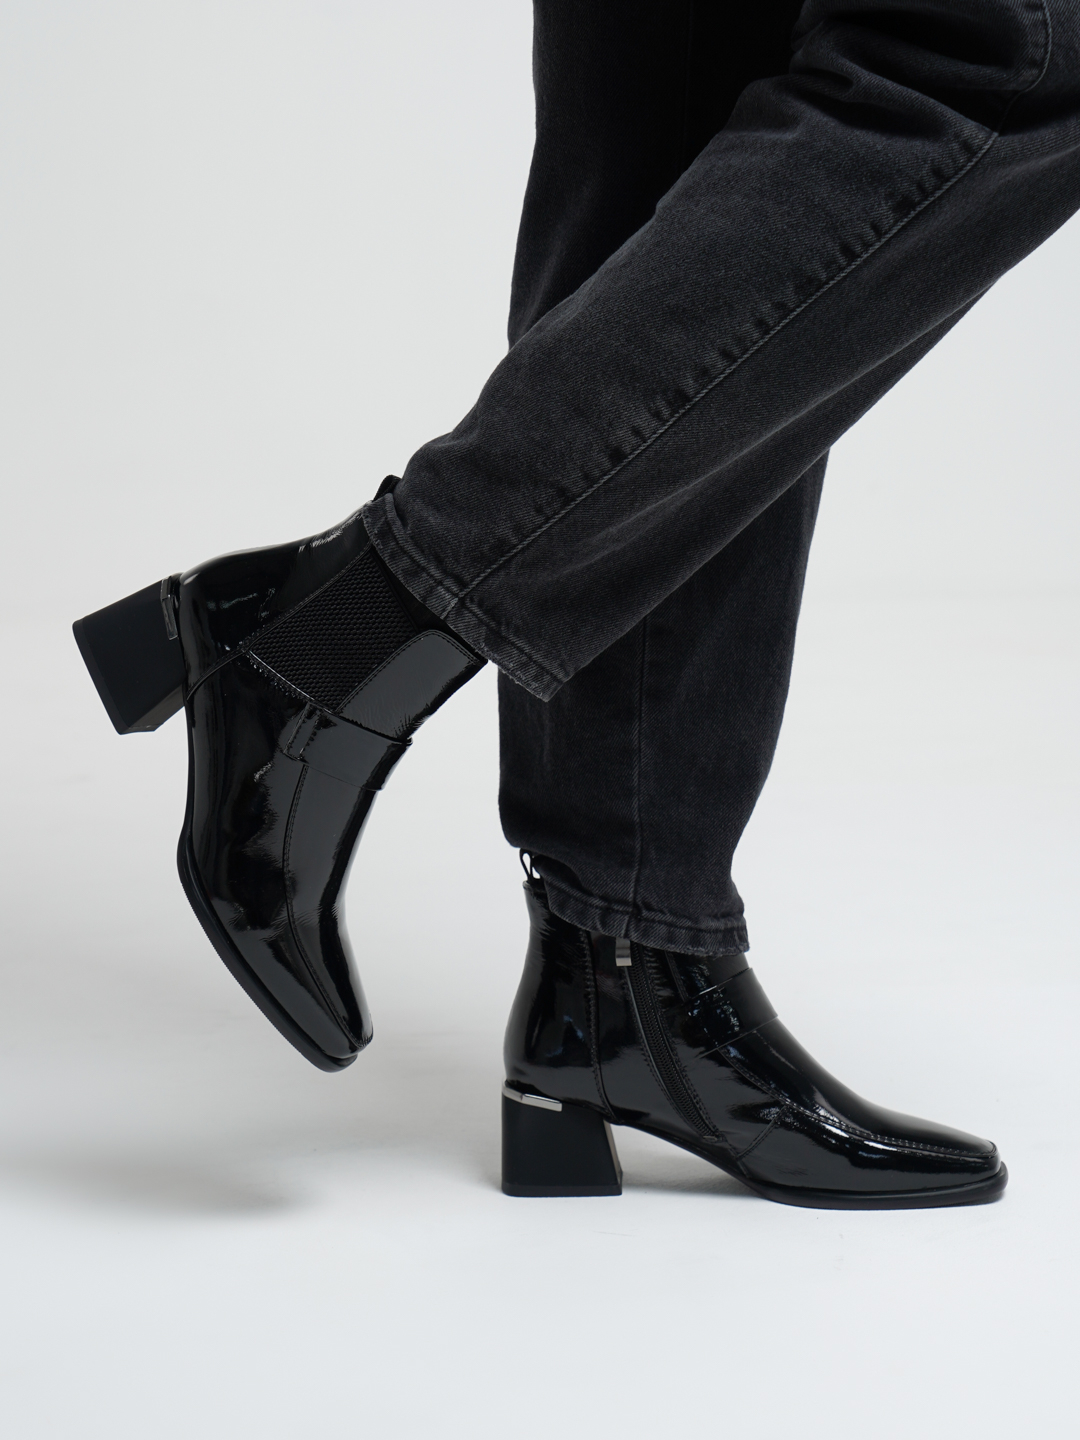 Ботинки женские, Madella купить по цене 6902 ₽ в интернет-магазинеKazanExpress